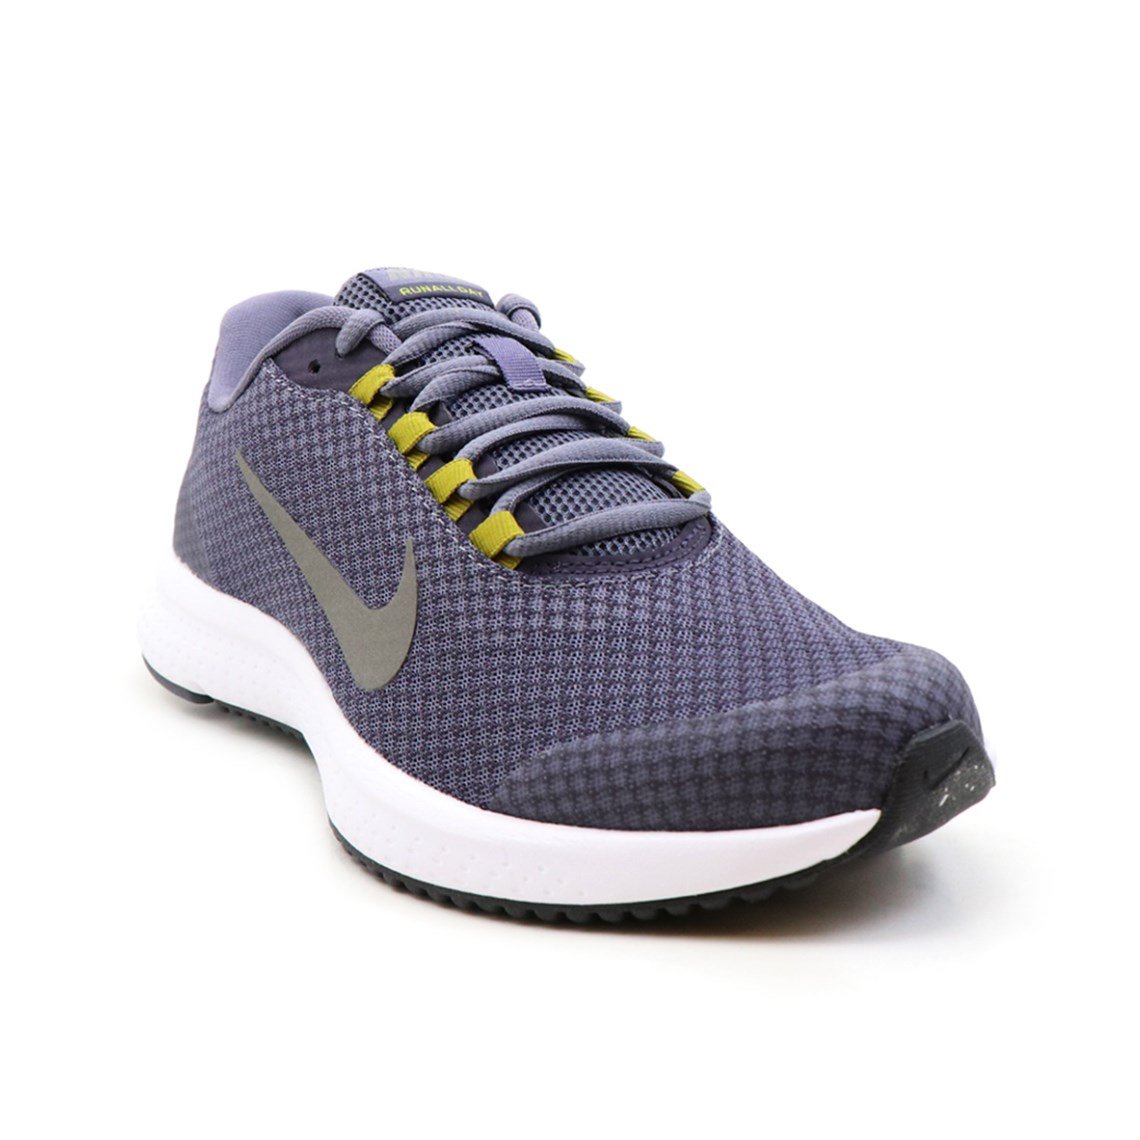 Nike Günlük Koşu Yürüyüş Mavi Hardal Erkek Spor Ayakkabı 898464-017